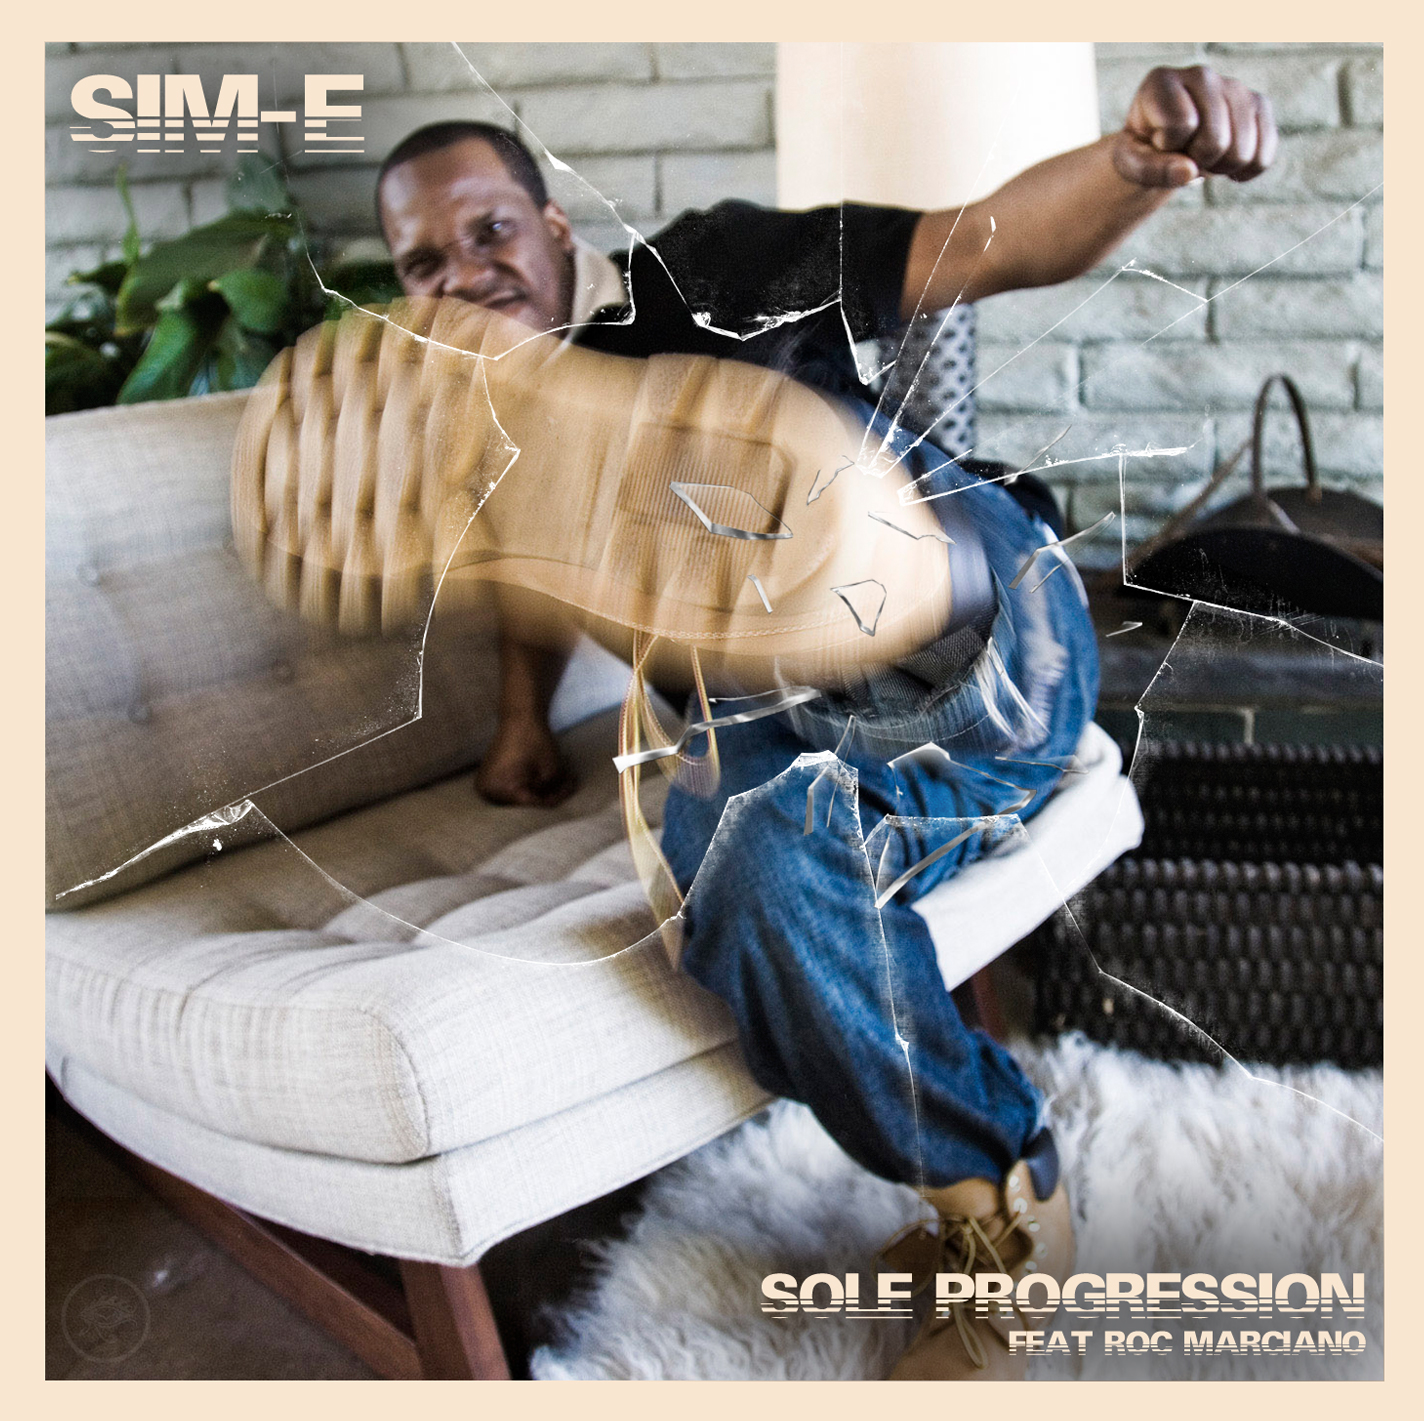 Sim-E “Sole Progression” ft Roc Marciano